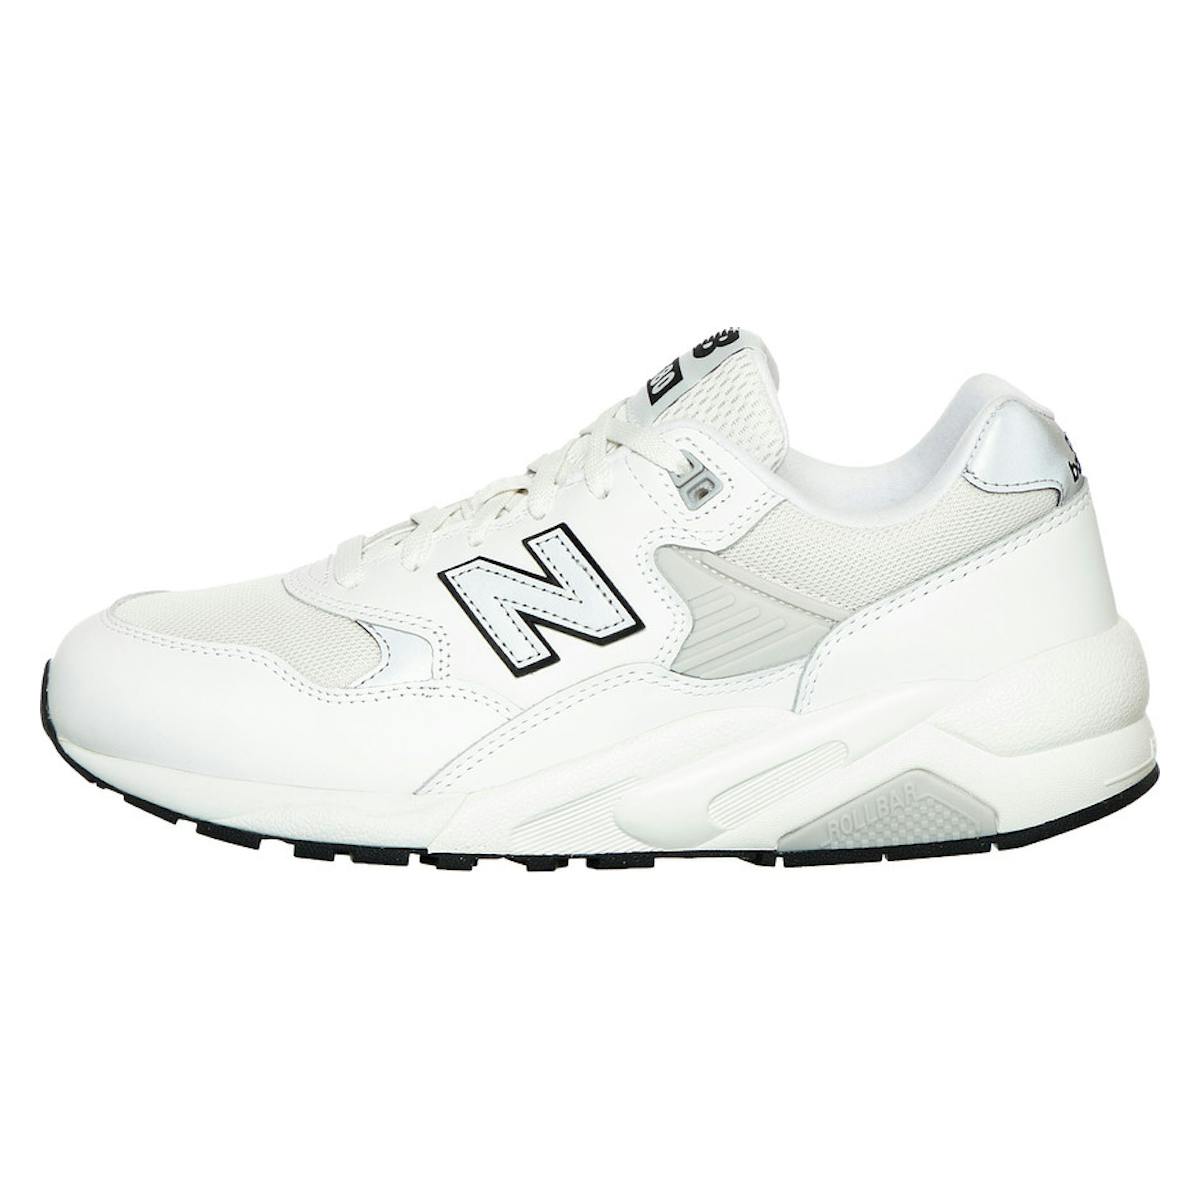 New Balance 580 White